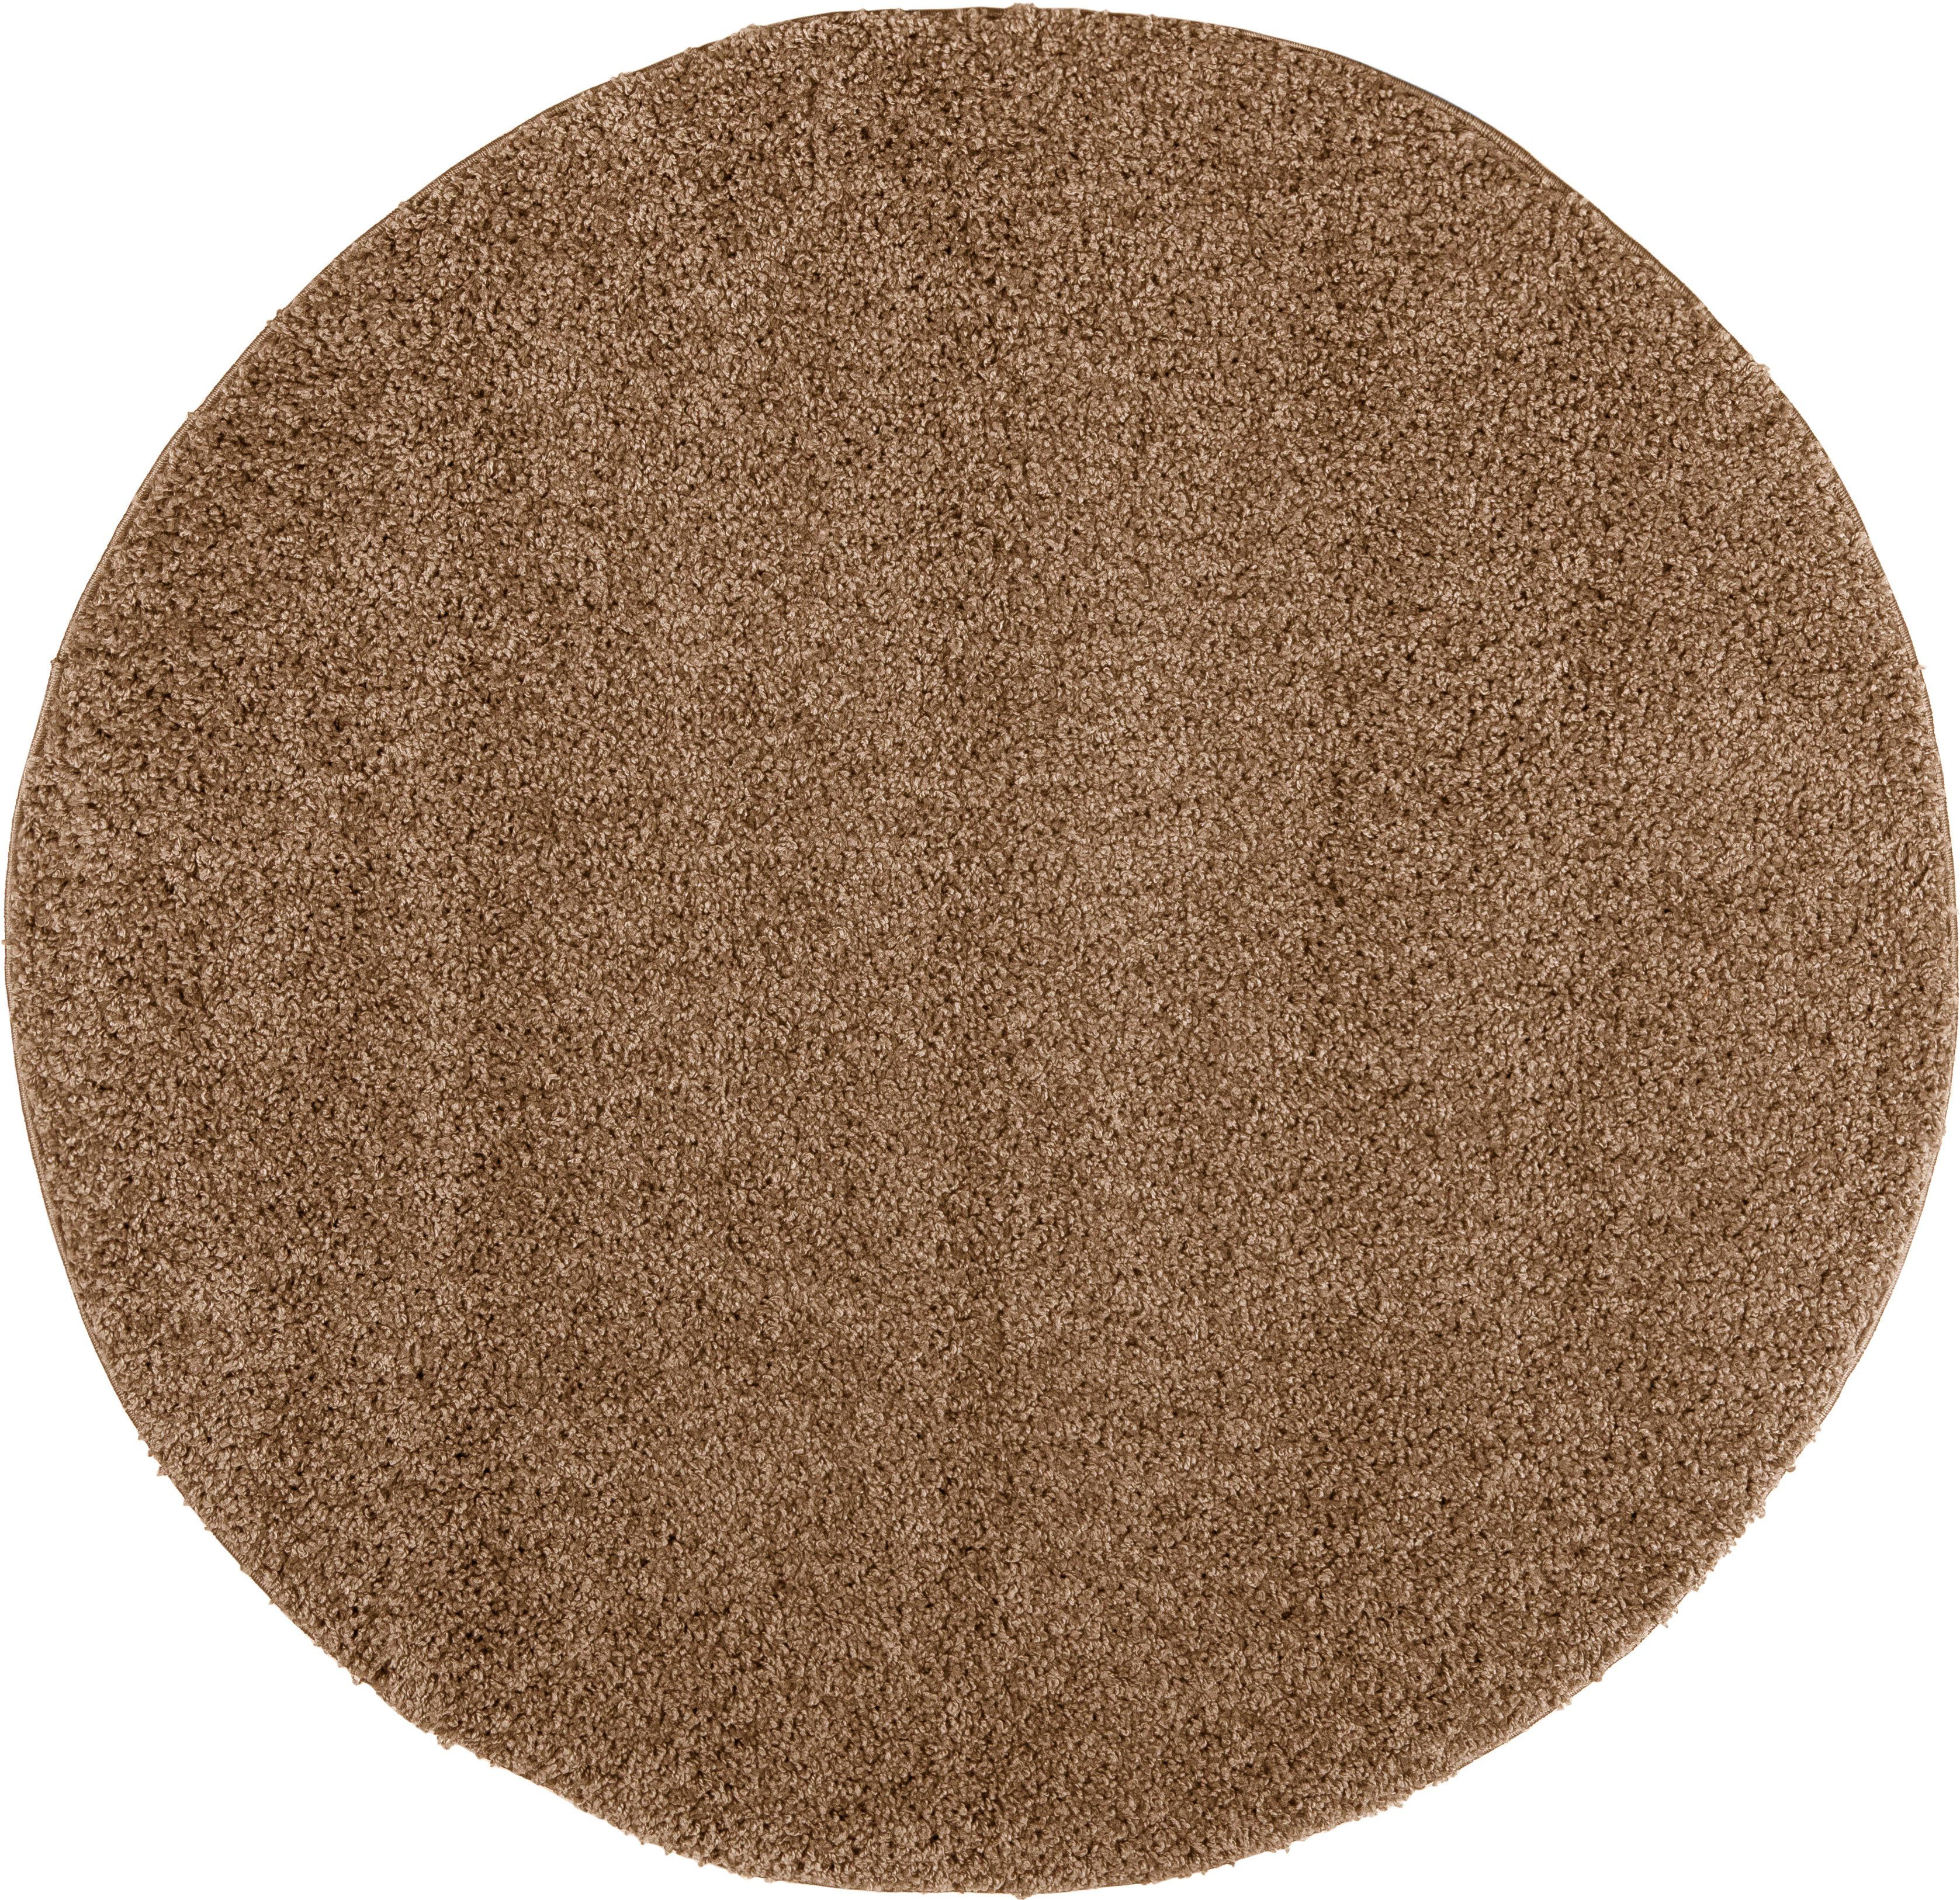 Teppich Shaggy 30, Home affaire, rund, Höhe: 30 mm, Teppich in Uni-Farben, besonders weich und kuschelig braun